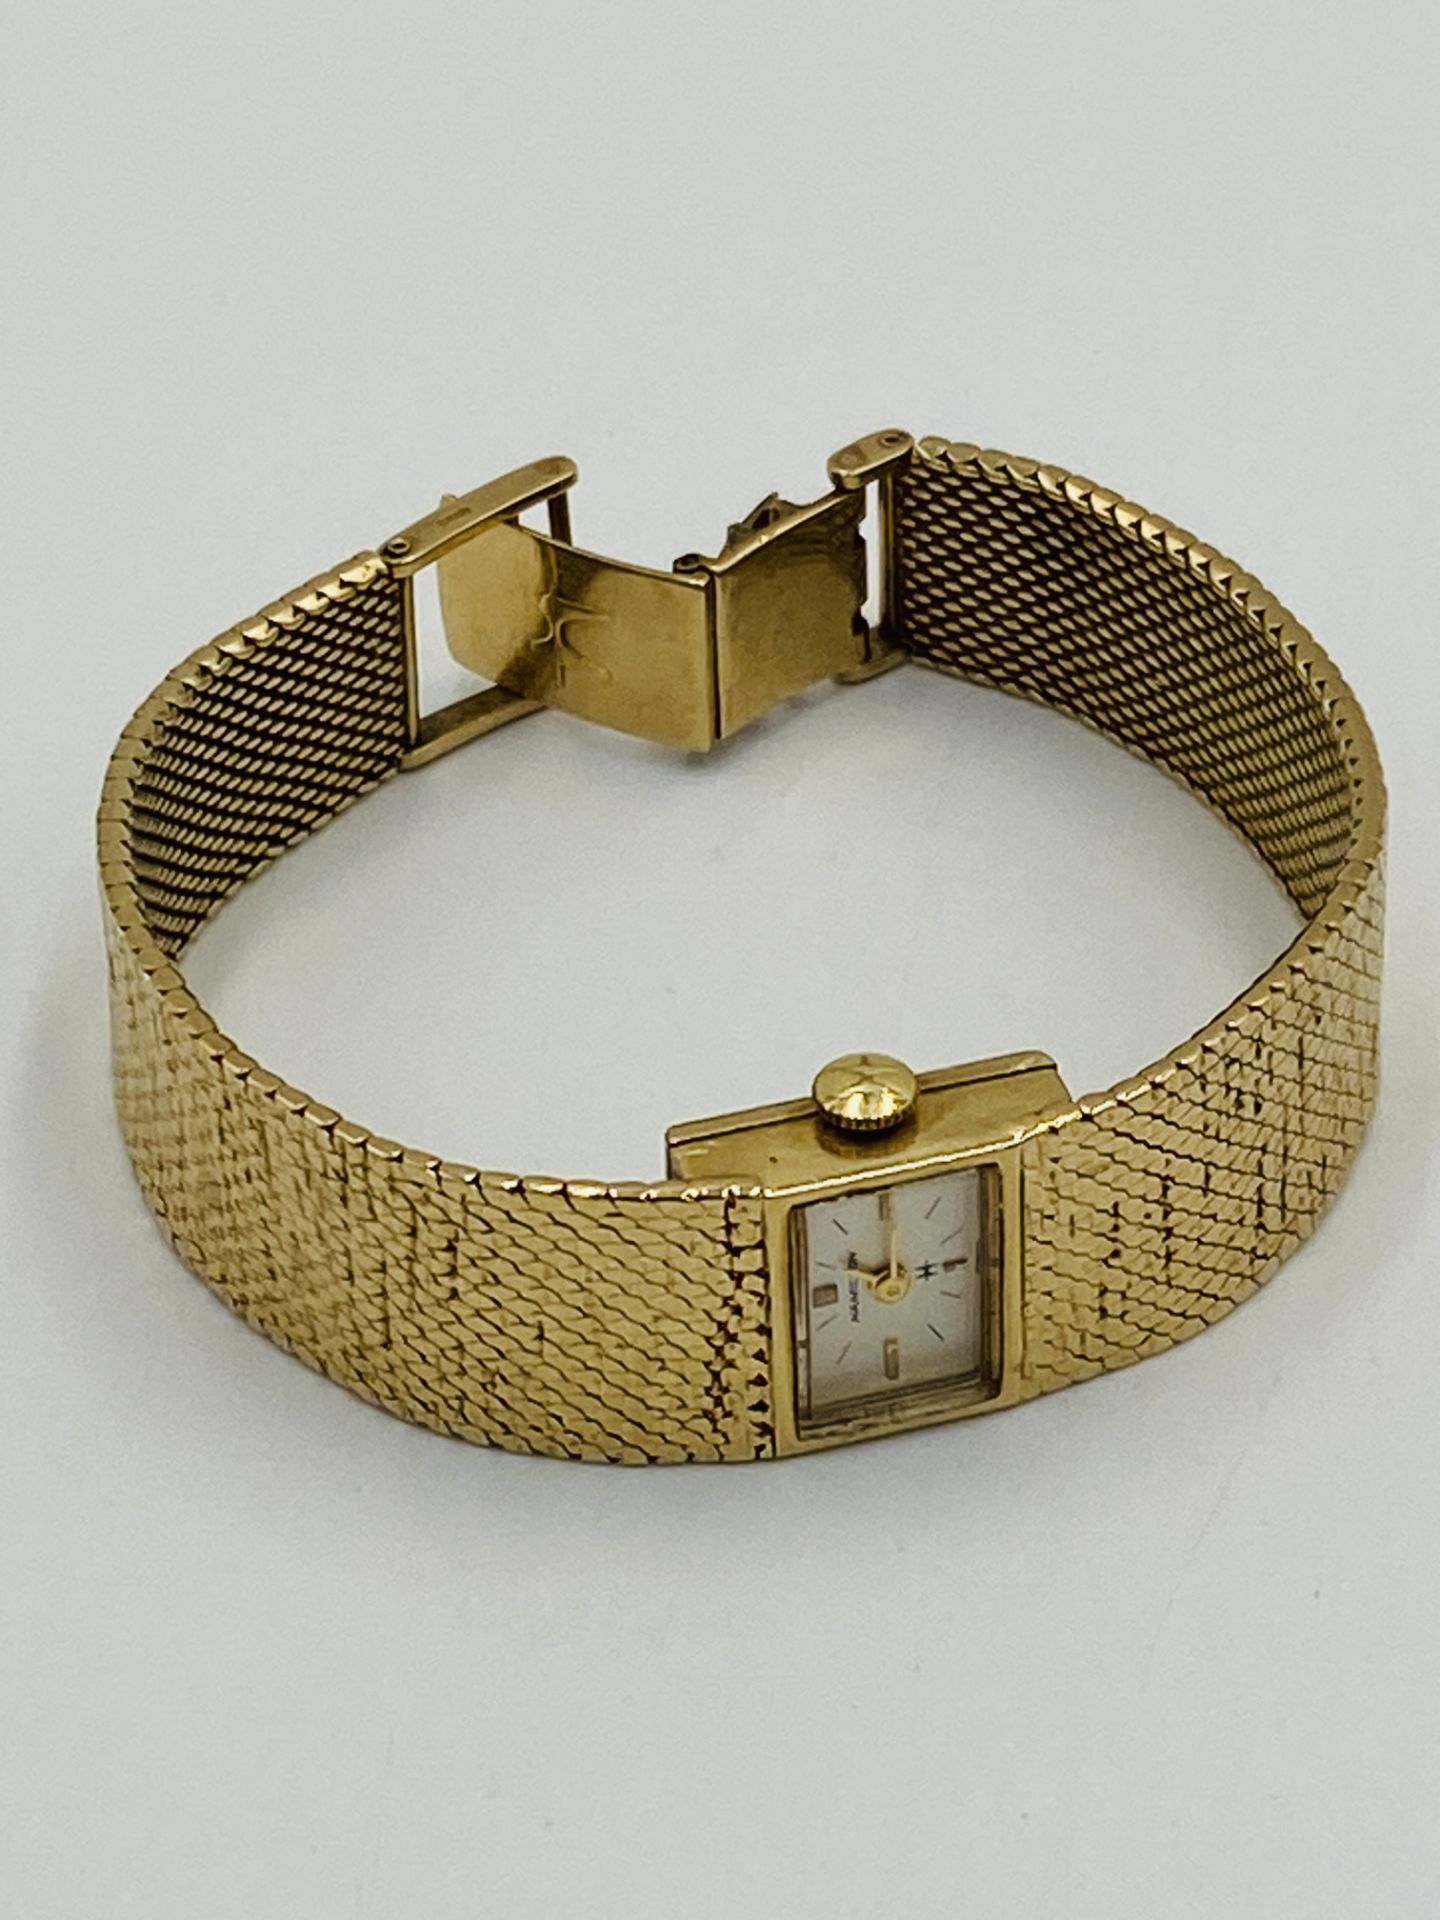 Hamilton wristwatch in 9ct gold case